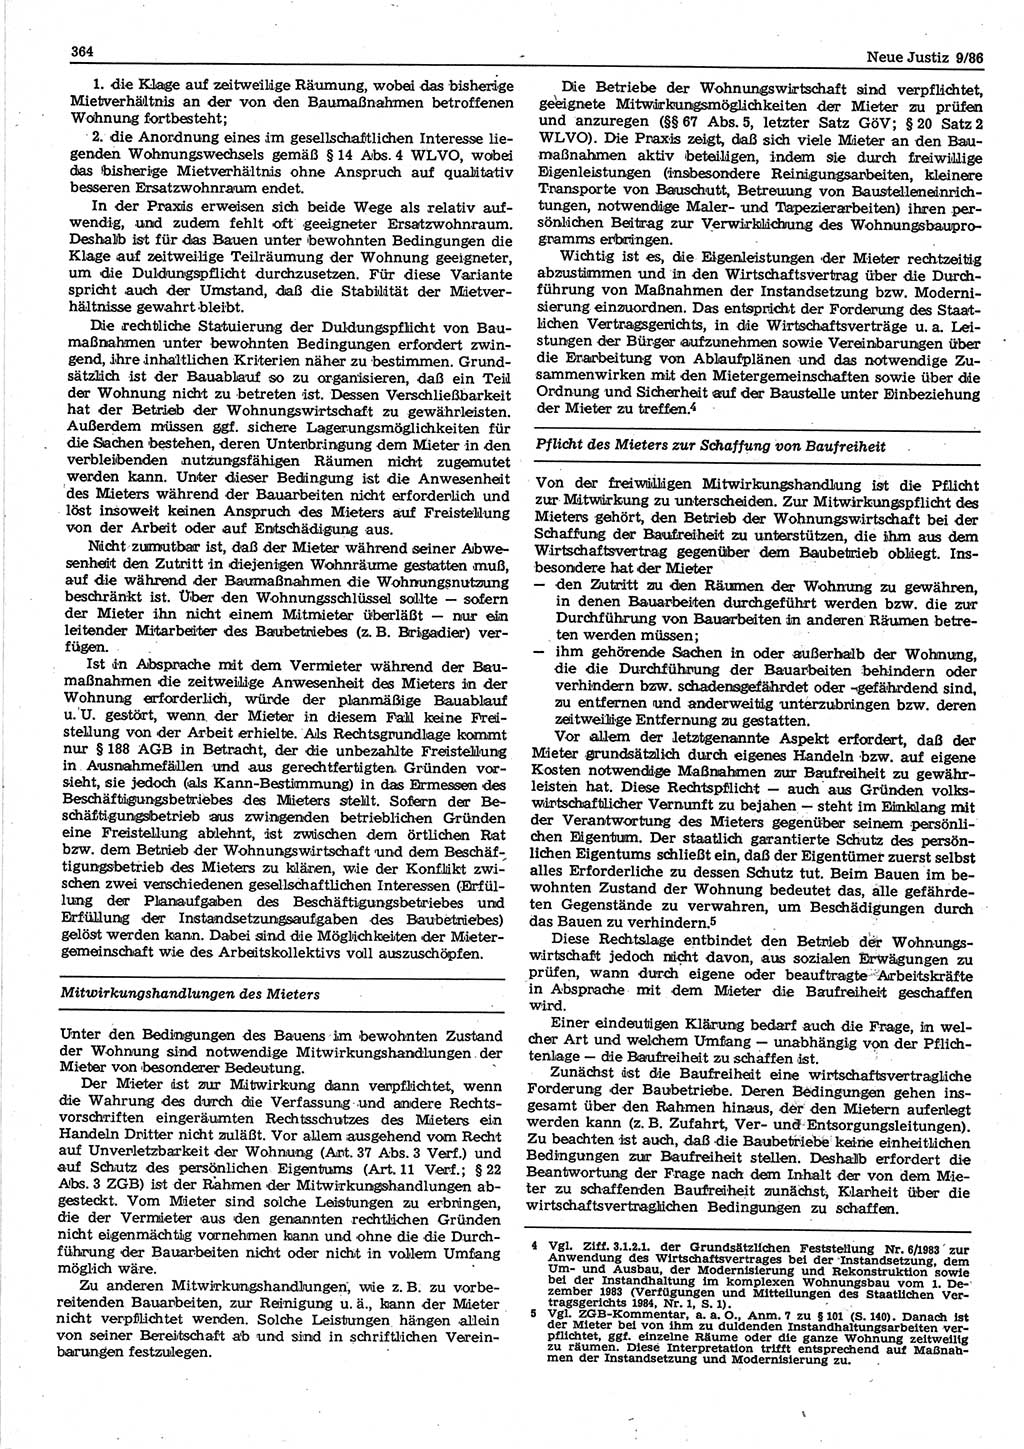 Neue Justiz (NJ), Zeitschrift für sozialistisches Recht und Gesetzlichkeit [Deutsche Demokratische Republik (DDR)], 40. Jahrgang 1986, Seite 364 (NJ DDR 1986, S. 364)